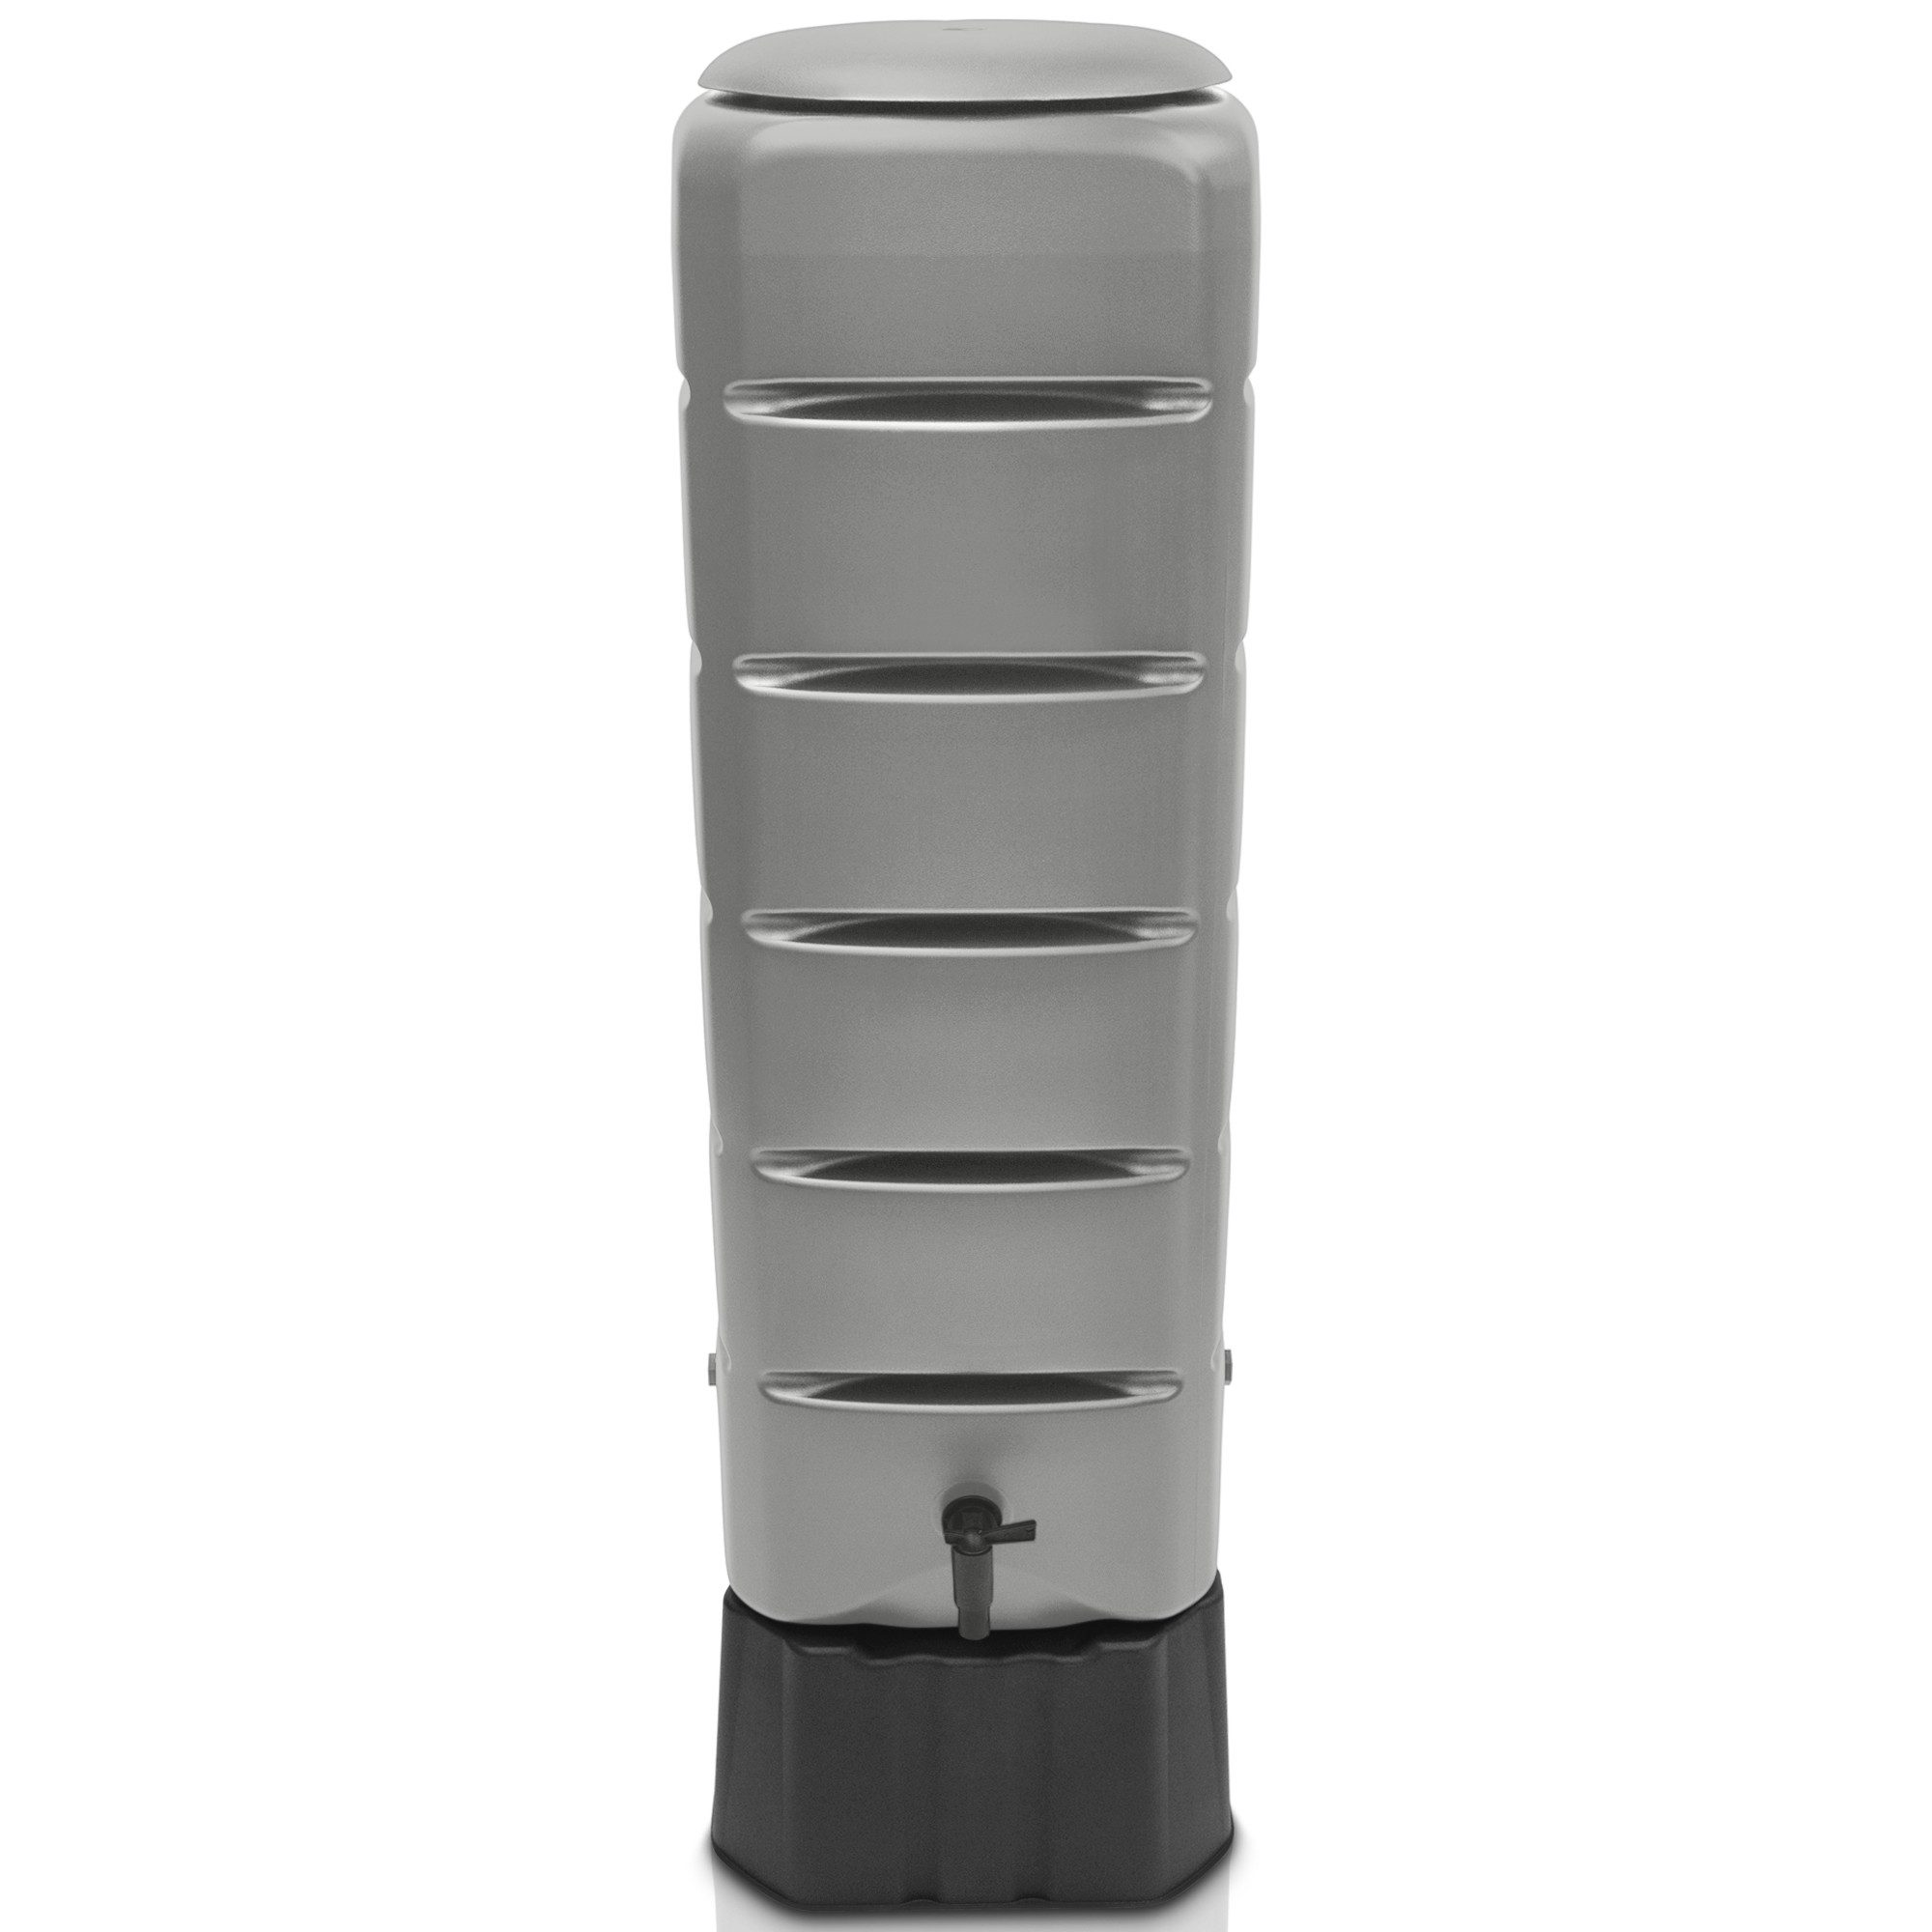 YourCasa Regentonne Regentonne [Tower] 120L mit Standfuss, Deckel & Wasserhahn Regenfass, 120 Liter, Eckig und Schmal, inkl. Sockel 39,6 x 118,6 cm